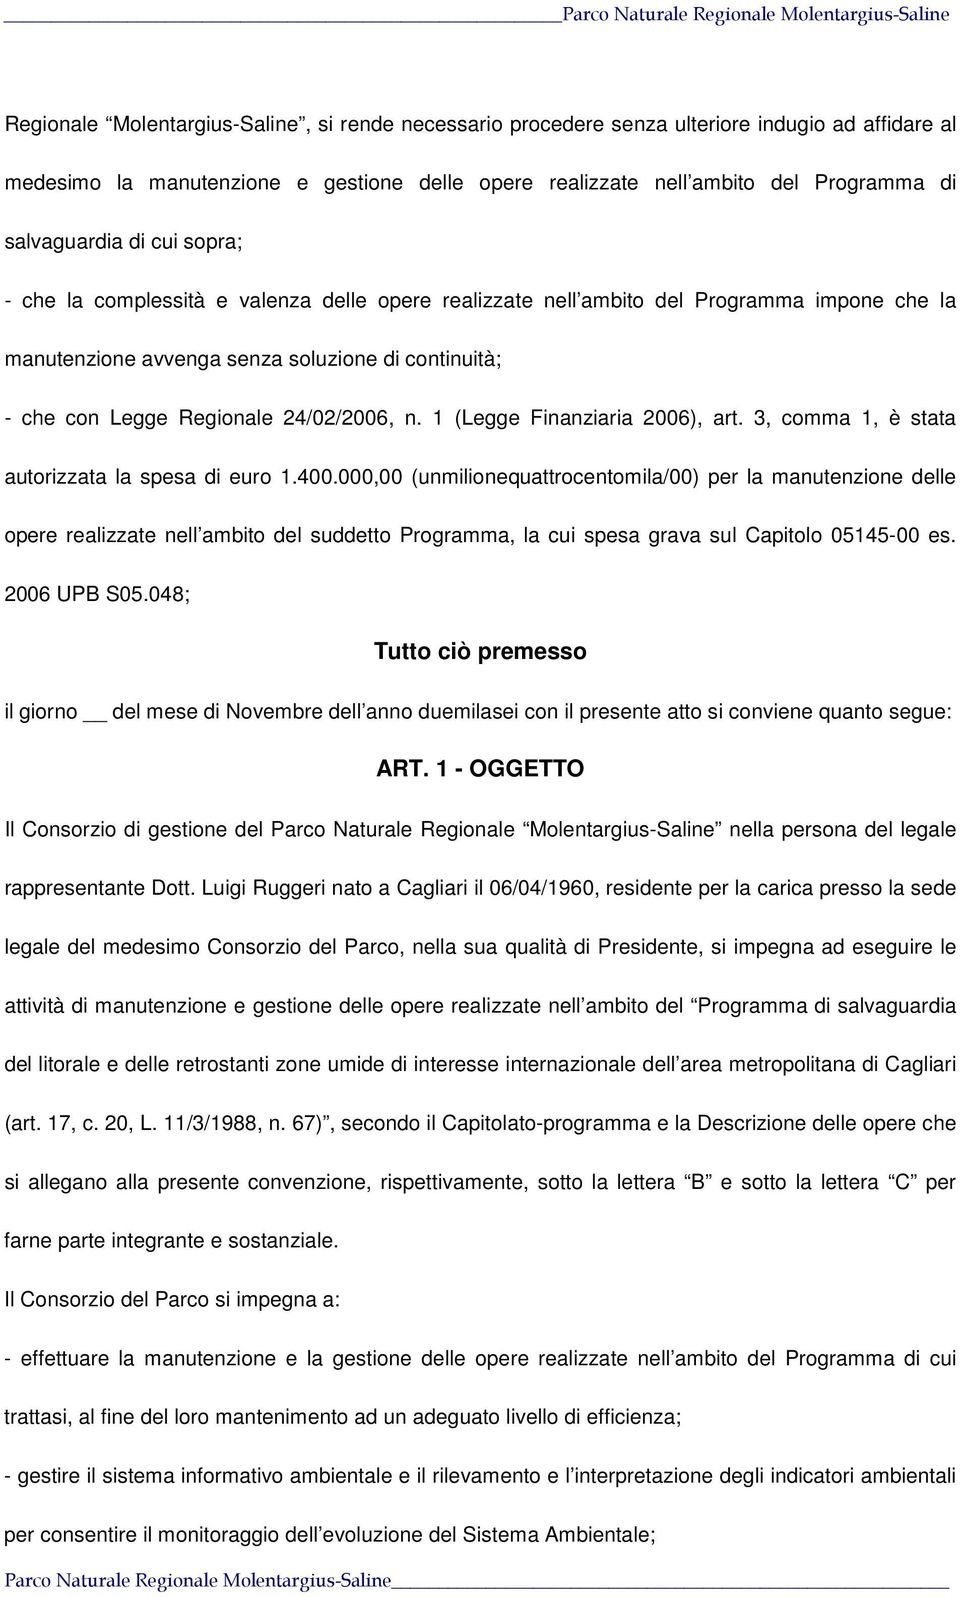 24/02/2006, n. 1 (Legge Finanziaria 2006), art. 3, comma 1, è stata autorizzata la spesa di euro 1.400.